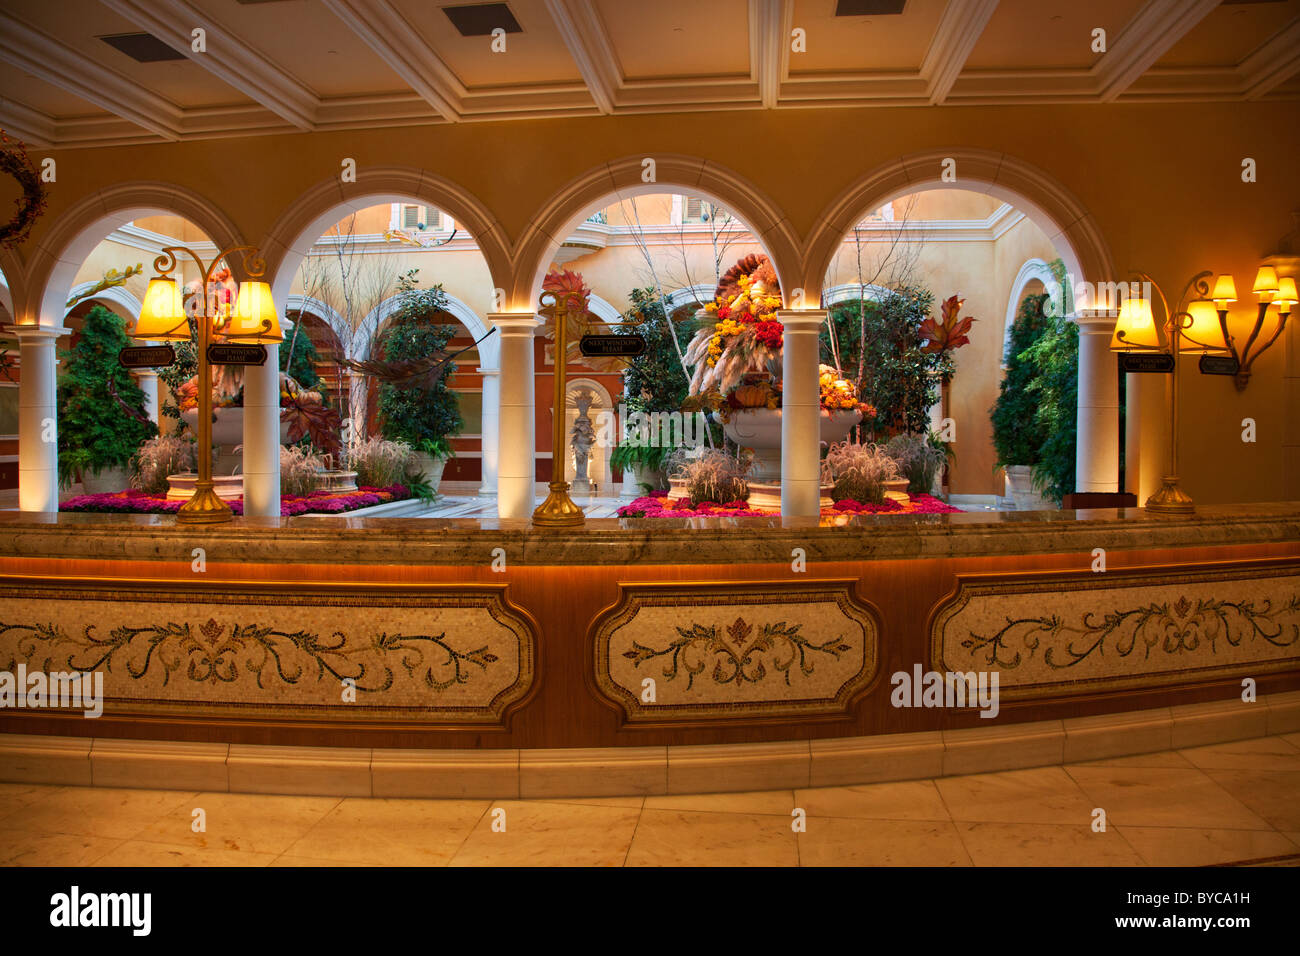 Lobby of Bellagio Resort and Casino, Las Vegas, Nevada Stock Photo